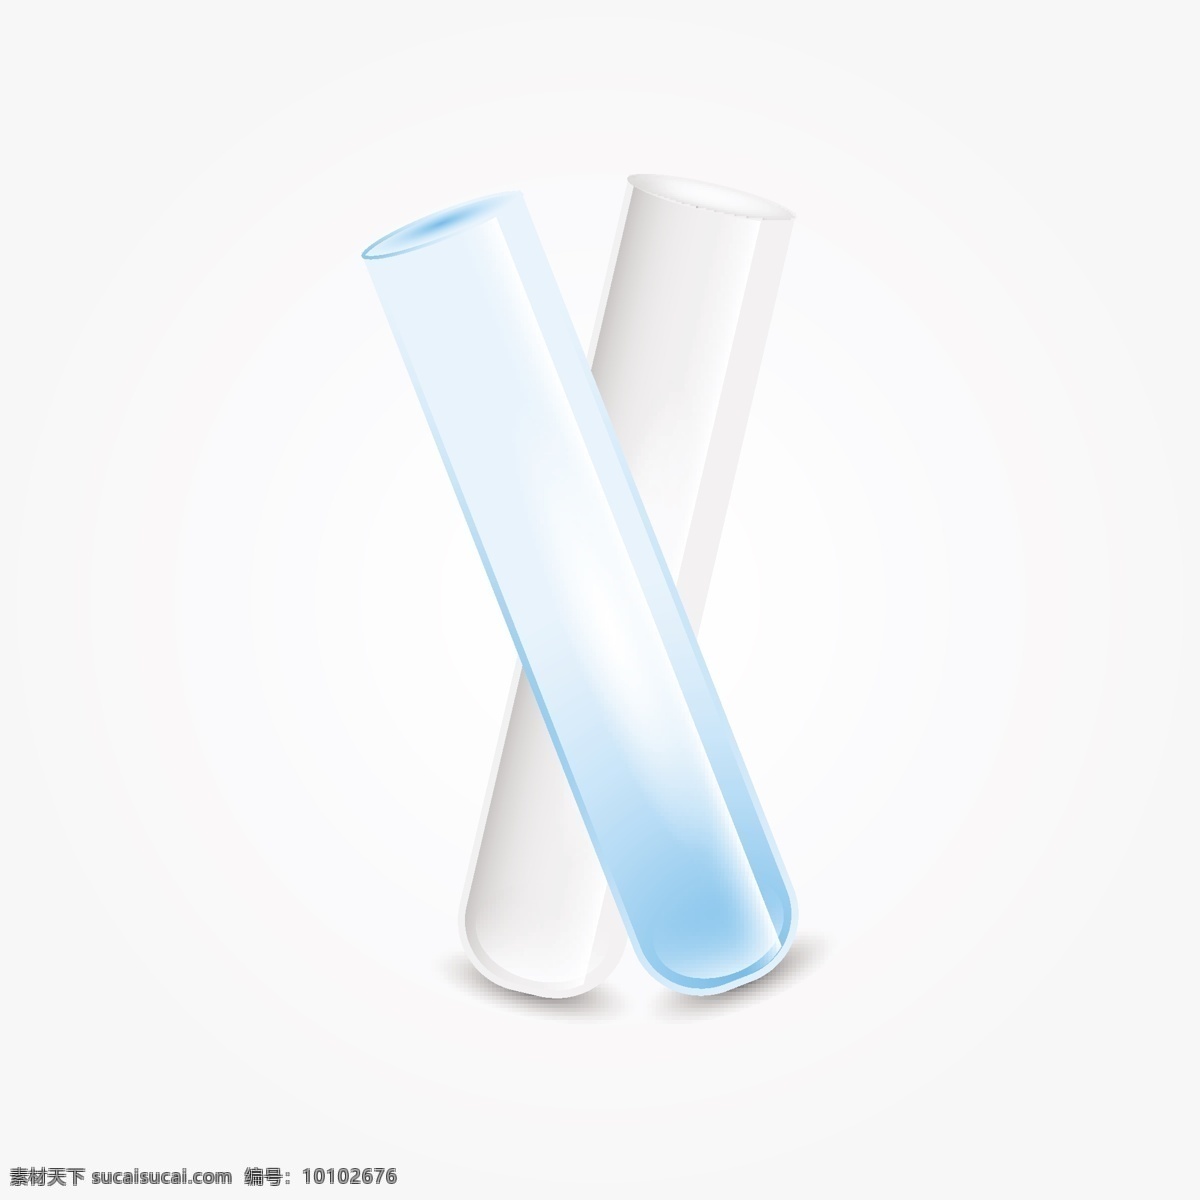 双 逼真 实验室 玻璃 医学 科学 化学 插图 白 化工 检验 生物 分析 液管 试管 烧杯 烧瓶 现实 两 白色